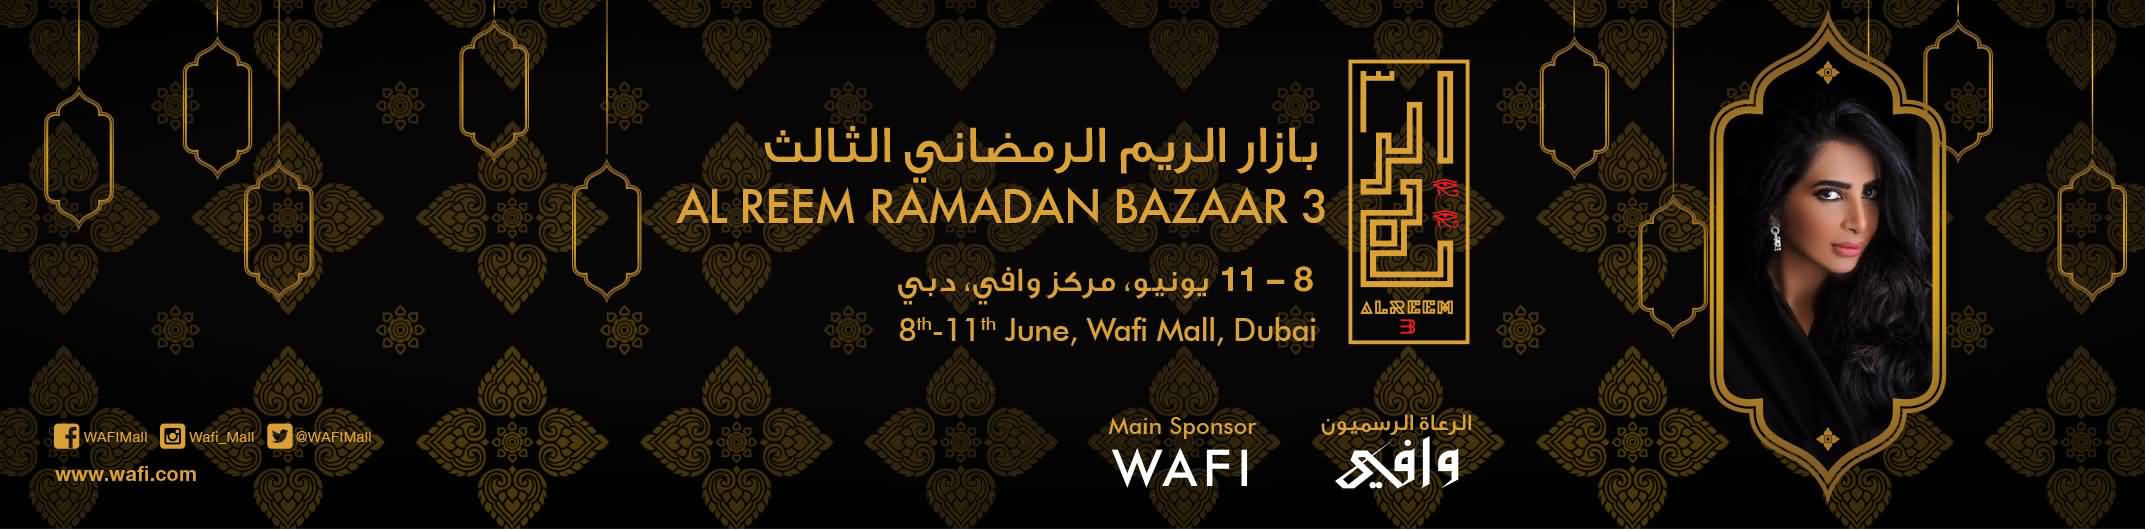 دبي تستضيف معرض بازار الريم الرمضاني الثالت لسنة 2016